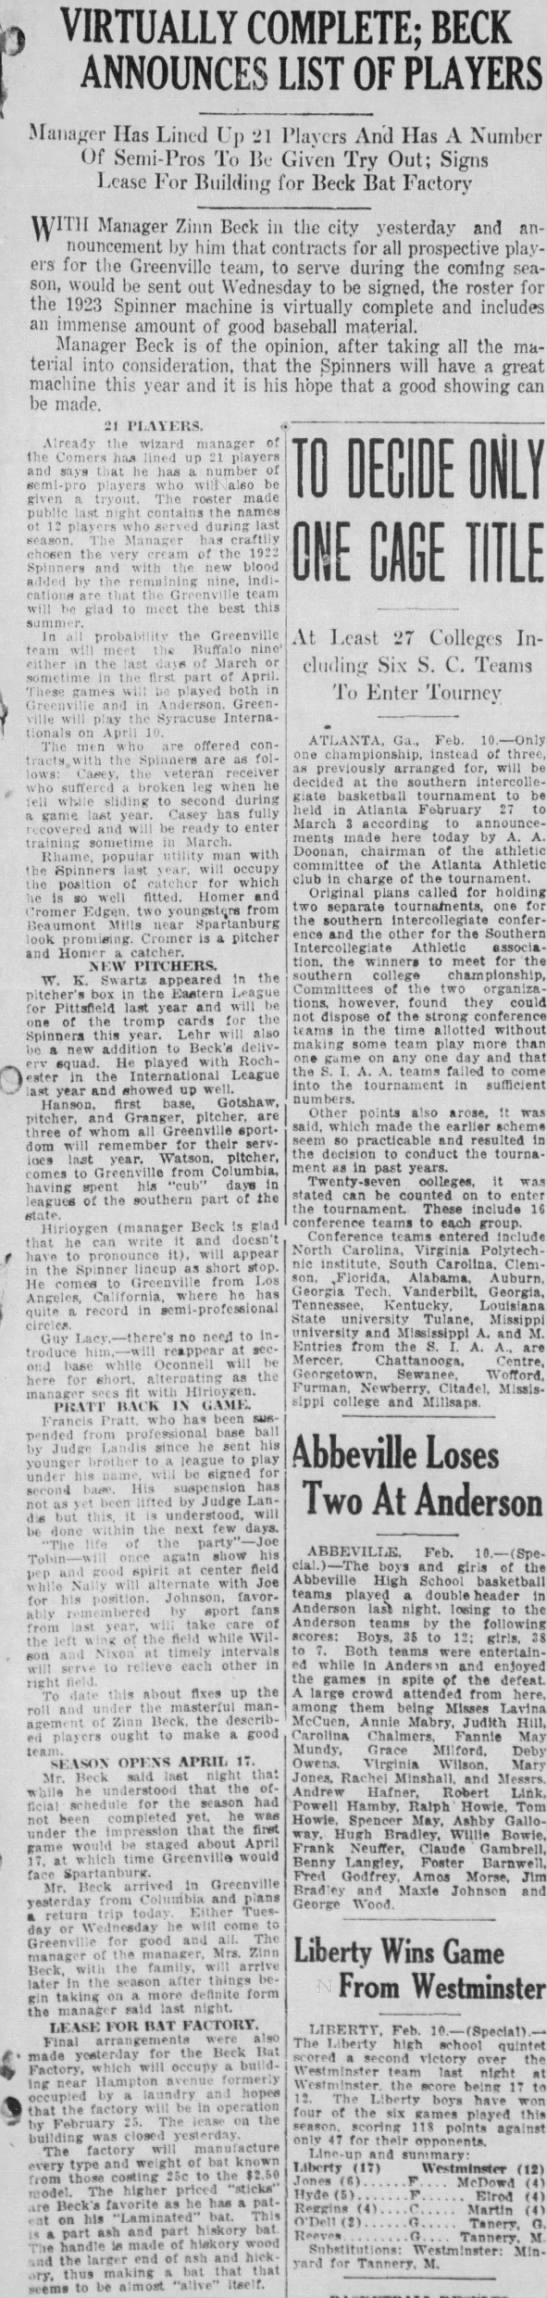 Zinn Beck Bat Co 11 Feb 1923 Greenville News - 